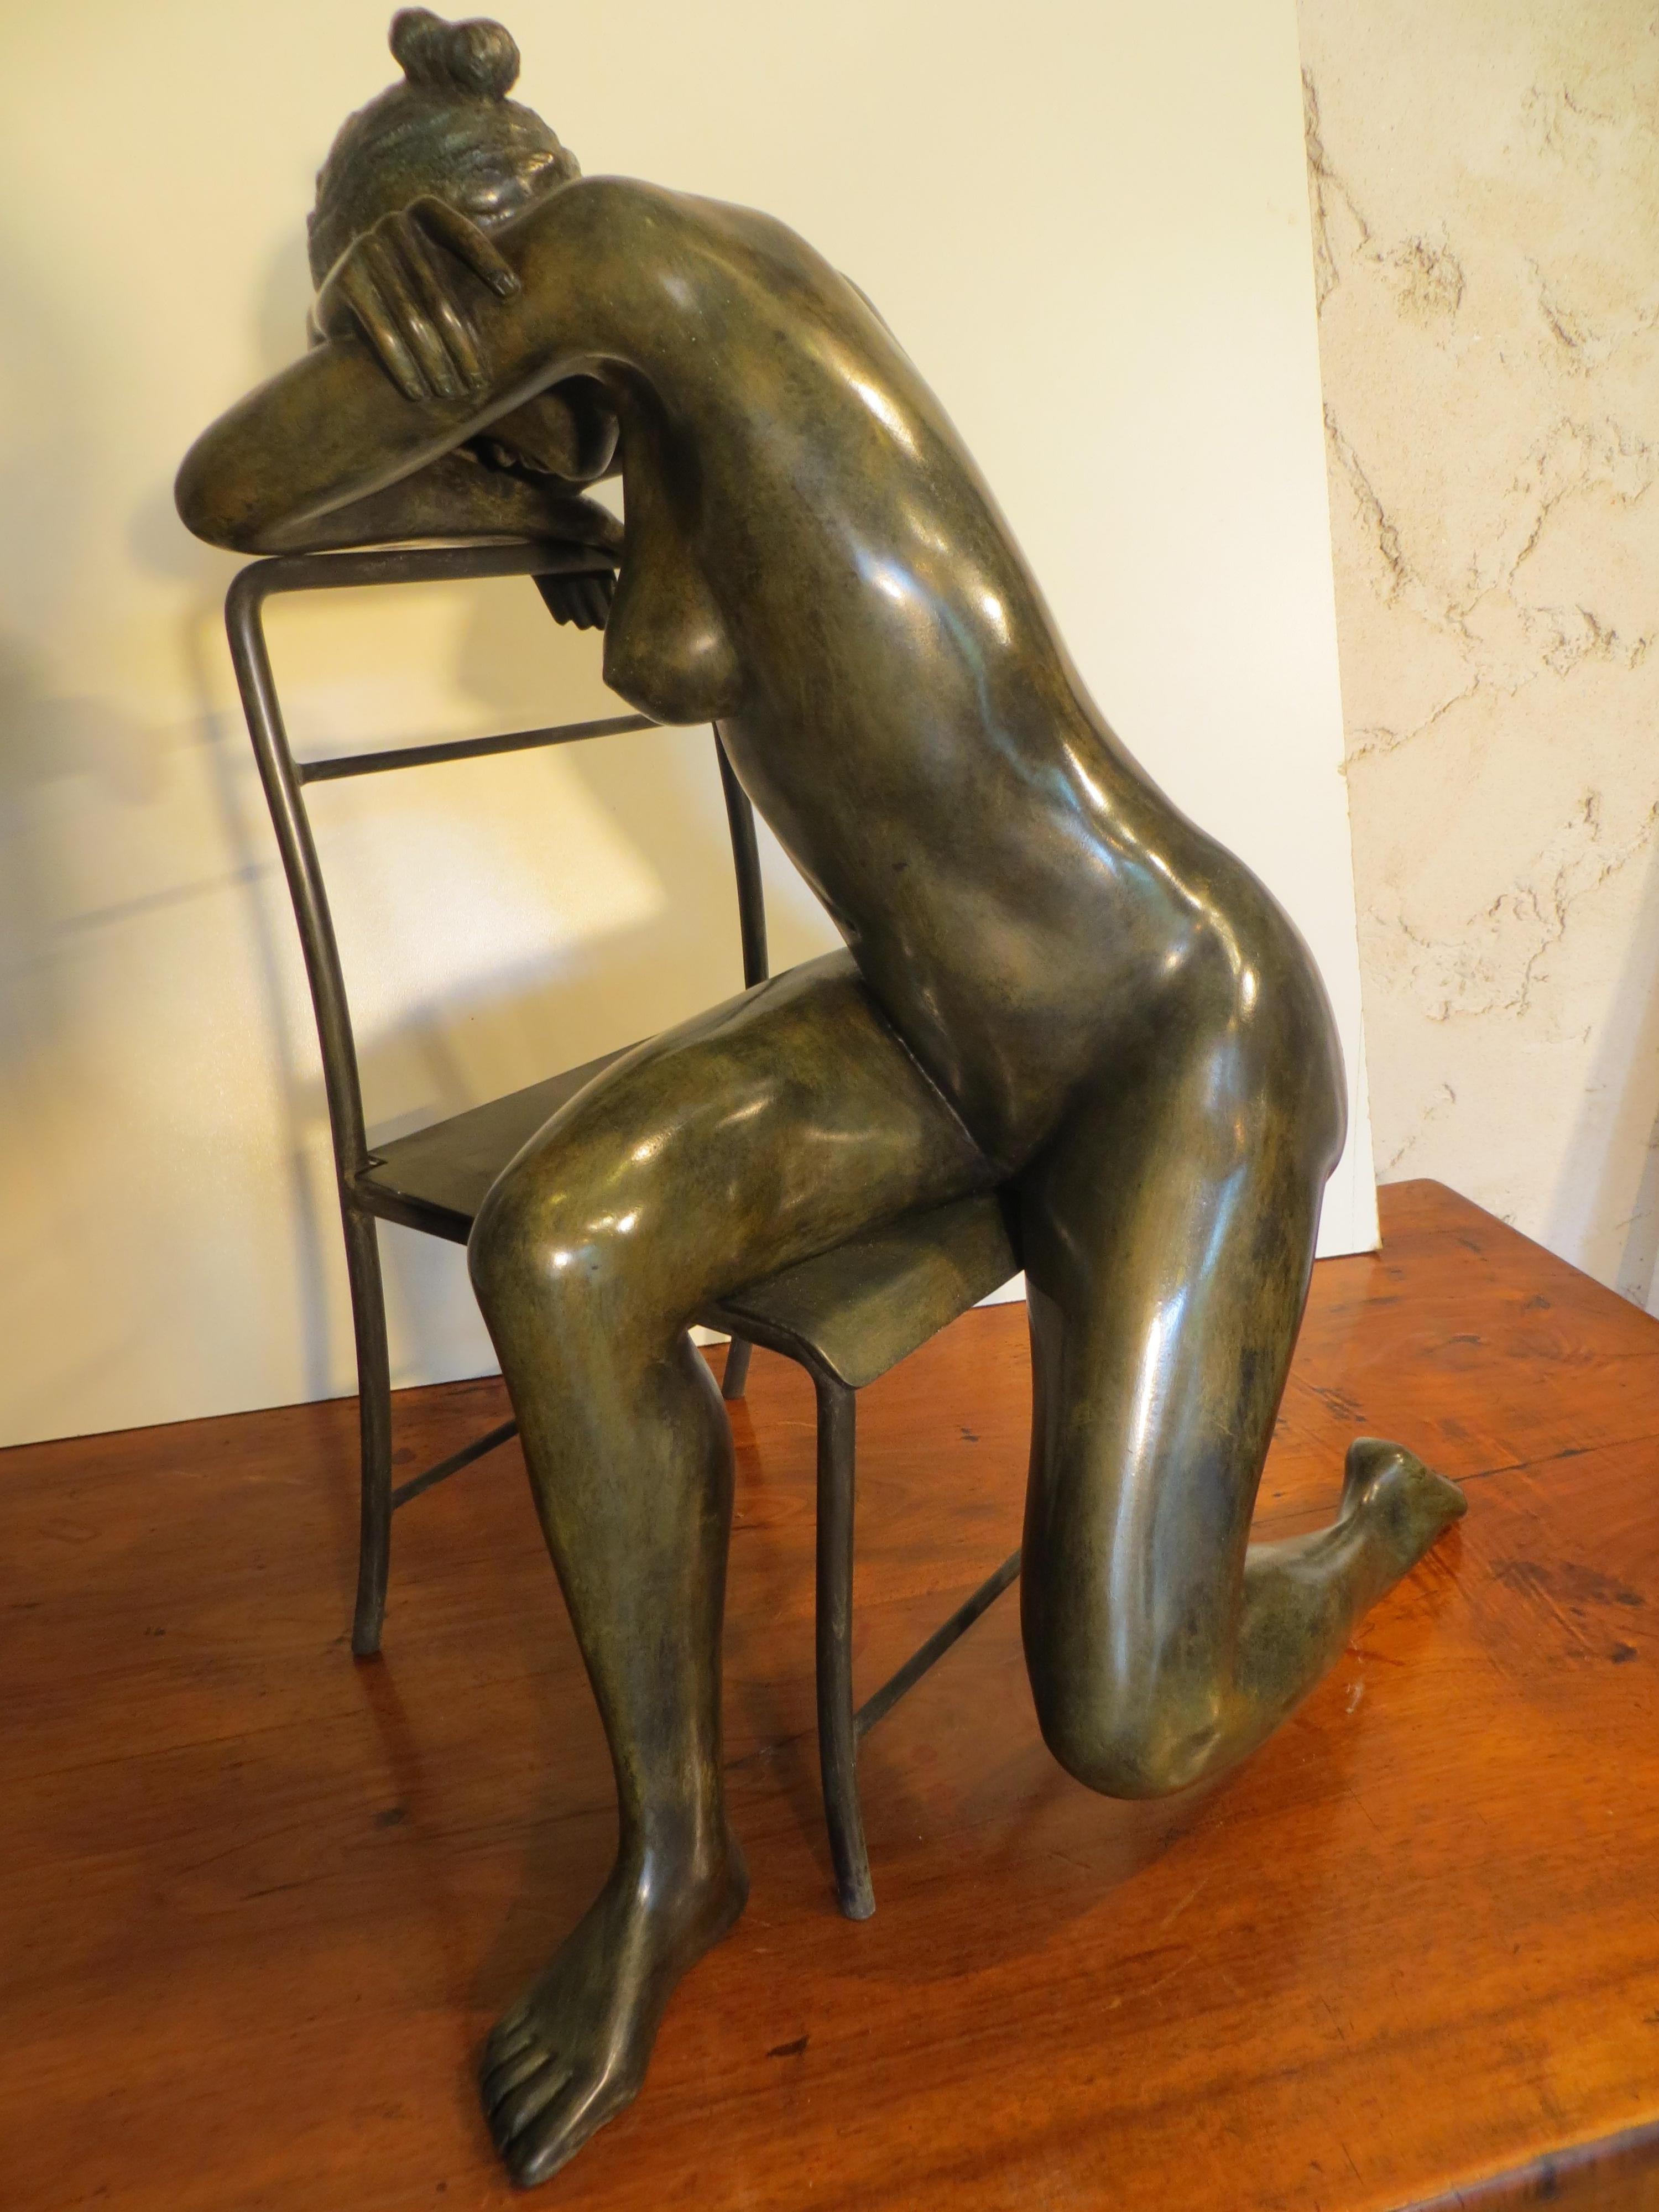 Fauteuil posé sur une chaise - Sculpture de Patrick Brun